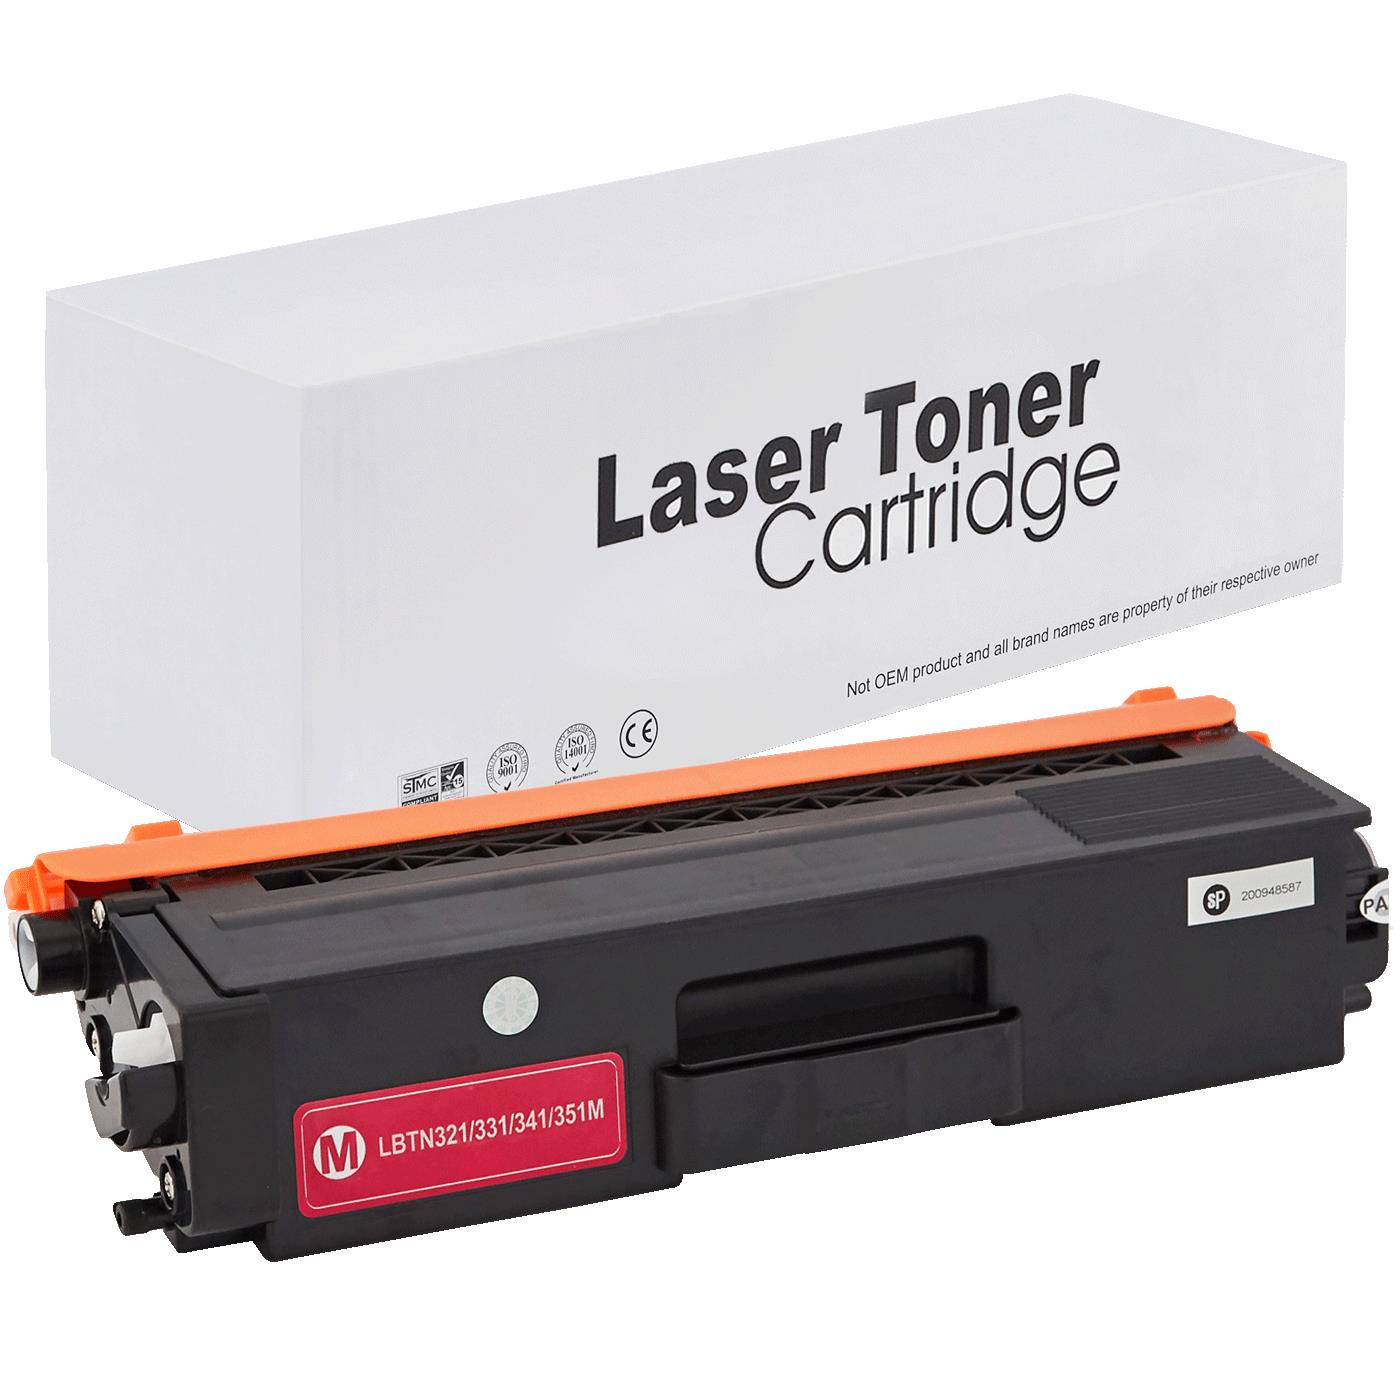 съвместима тонер касета за принтери и печатащи устройства на Brother MFC-L 8650 CDW Toner BR-321M | TN321M. Ниски цени, прецизно изпълнение, високо качество.